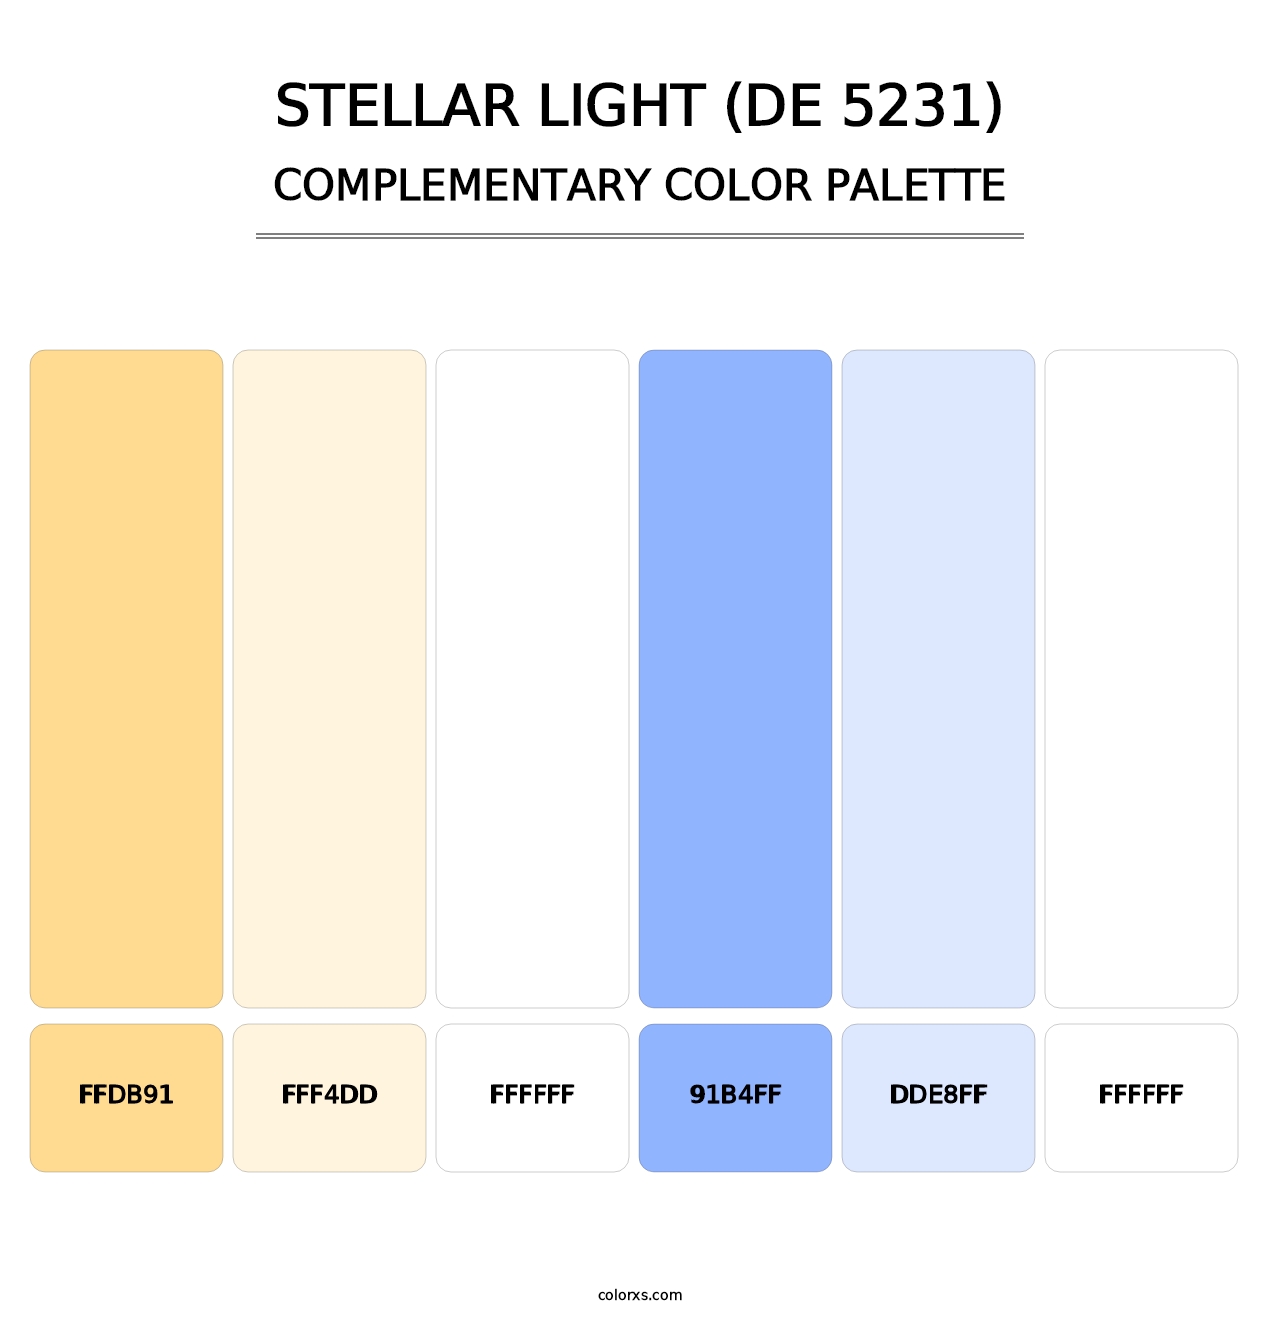 Stellar Light (DE 5231) - Complementary Color Palette